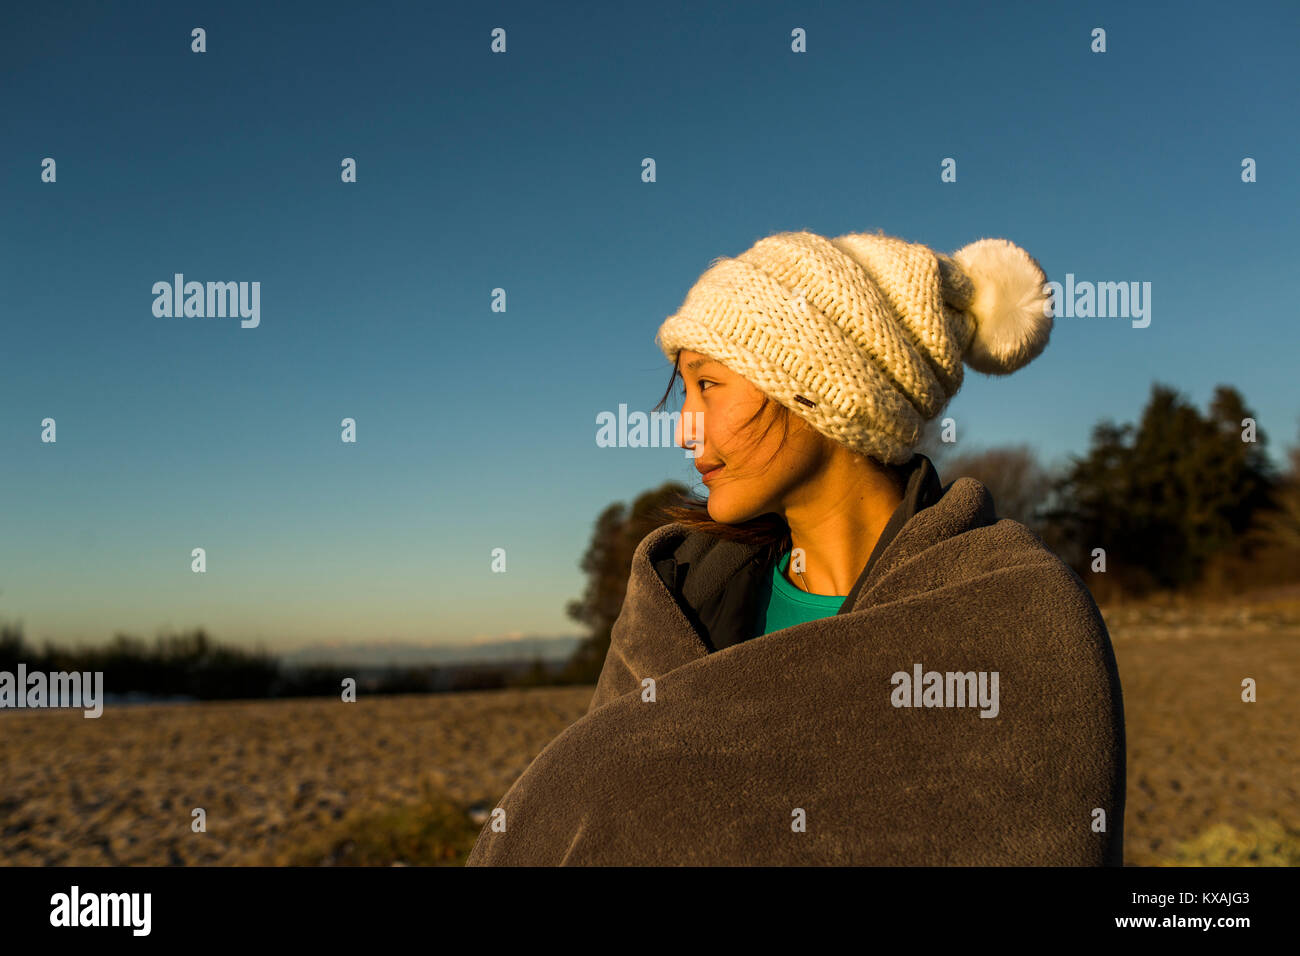 Giovane donna seduta in knit hat e avvolto in una coperta durante il riposo dopo l'esecuzione in Discovery Park, Seattle, Washington sate, STATI UNITI D'AMERICA Foto Stock